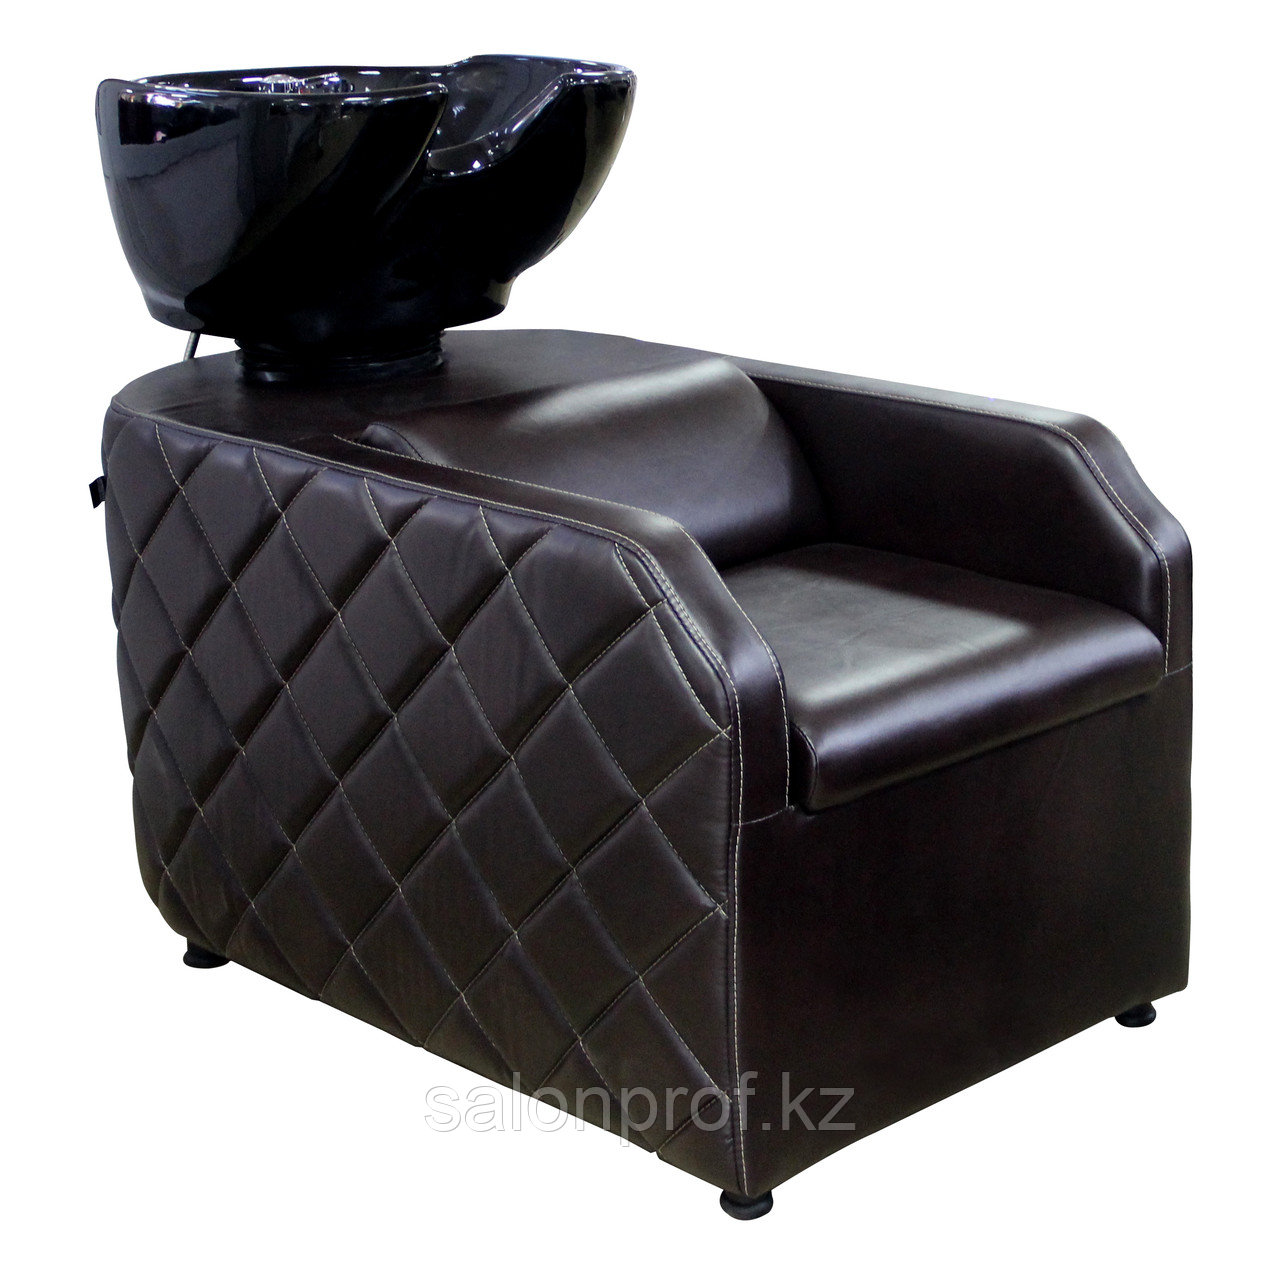 AS-007 Мойка парикмахерская с креслом (темно-коричневая)